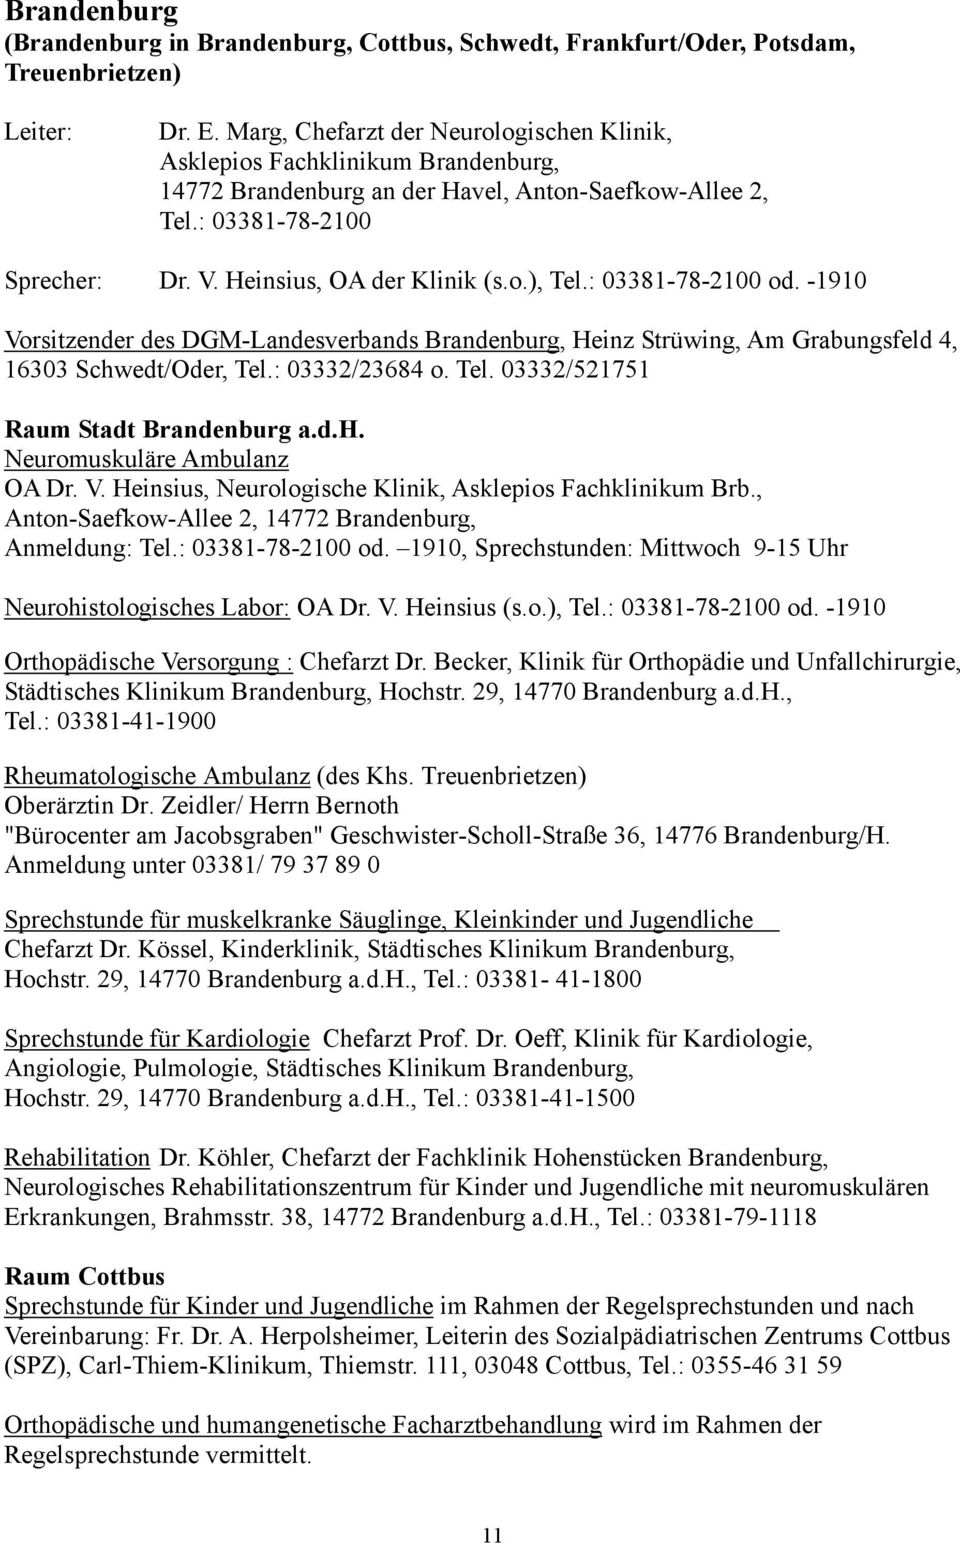 : 03381-78-2100 od. -1910 Vorsitzender des DGM-Landesverbands Brandenburg, Heinz Strüwing, Am Grabungsfeld 4, 16303 Schwedt/Oder, Tel.: 03332/23684 o. Tel. 03332/521751 Raum Stadt Brandenburg a.d.h. Neuromuskuläre Ambulanz OA Dr.